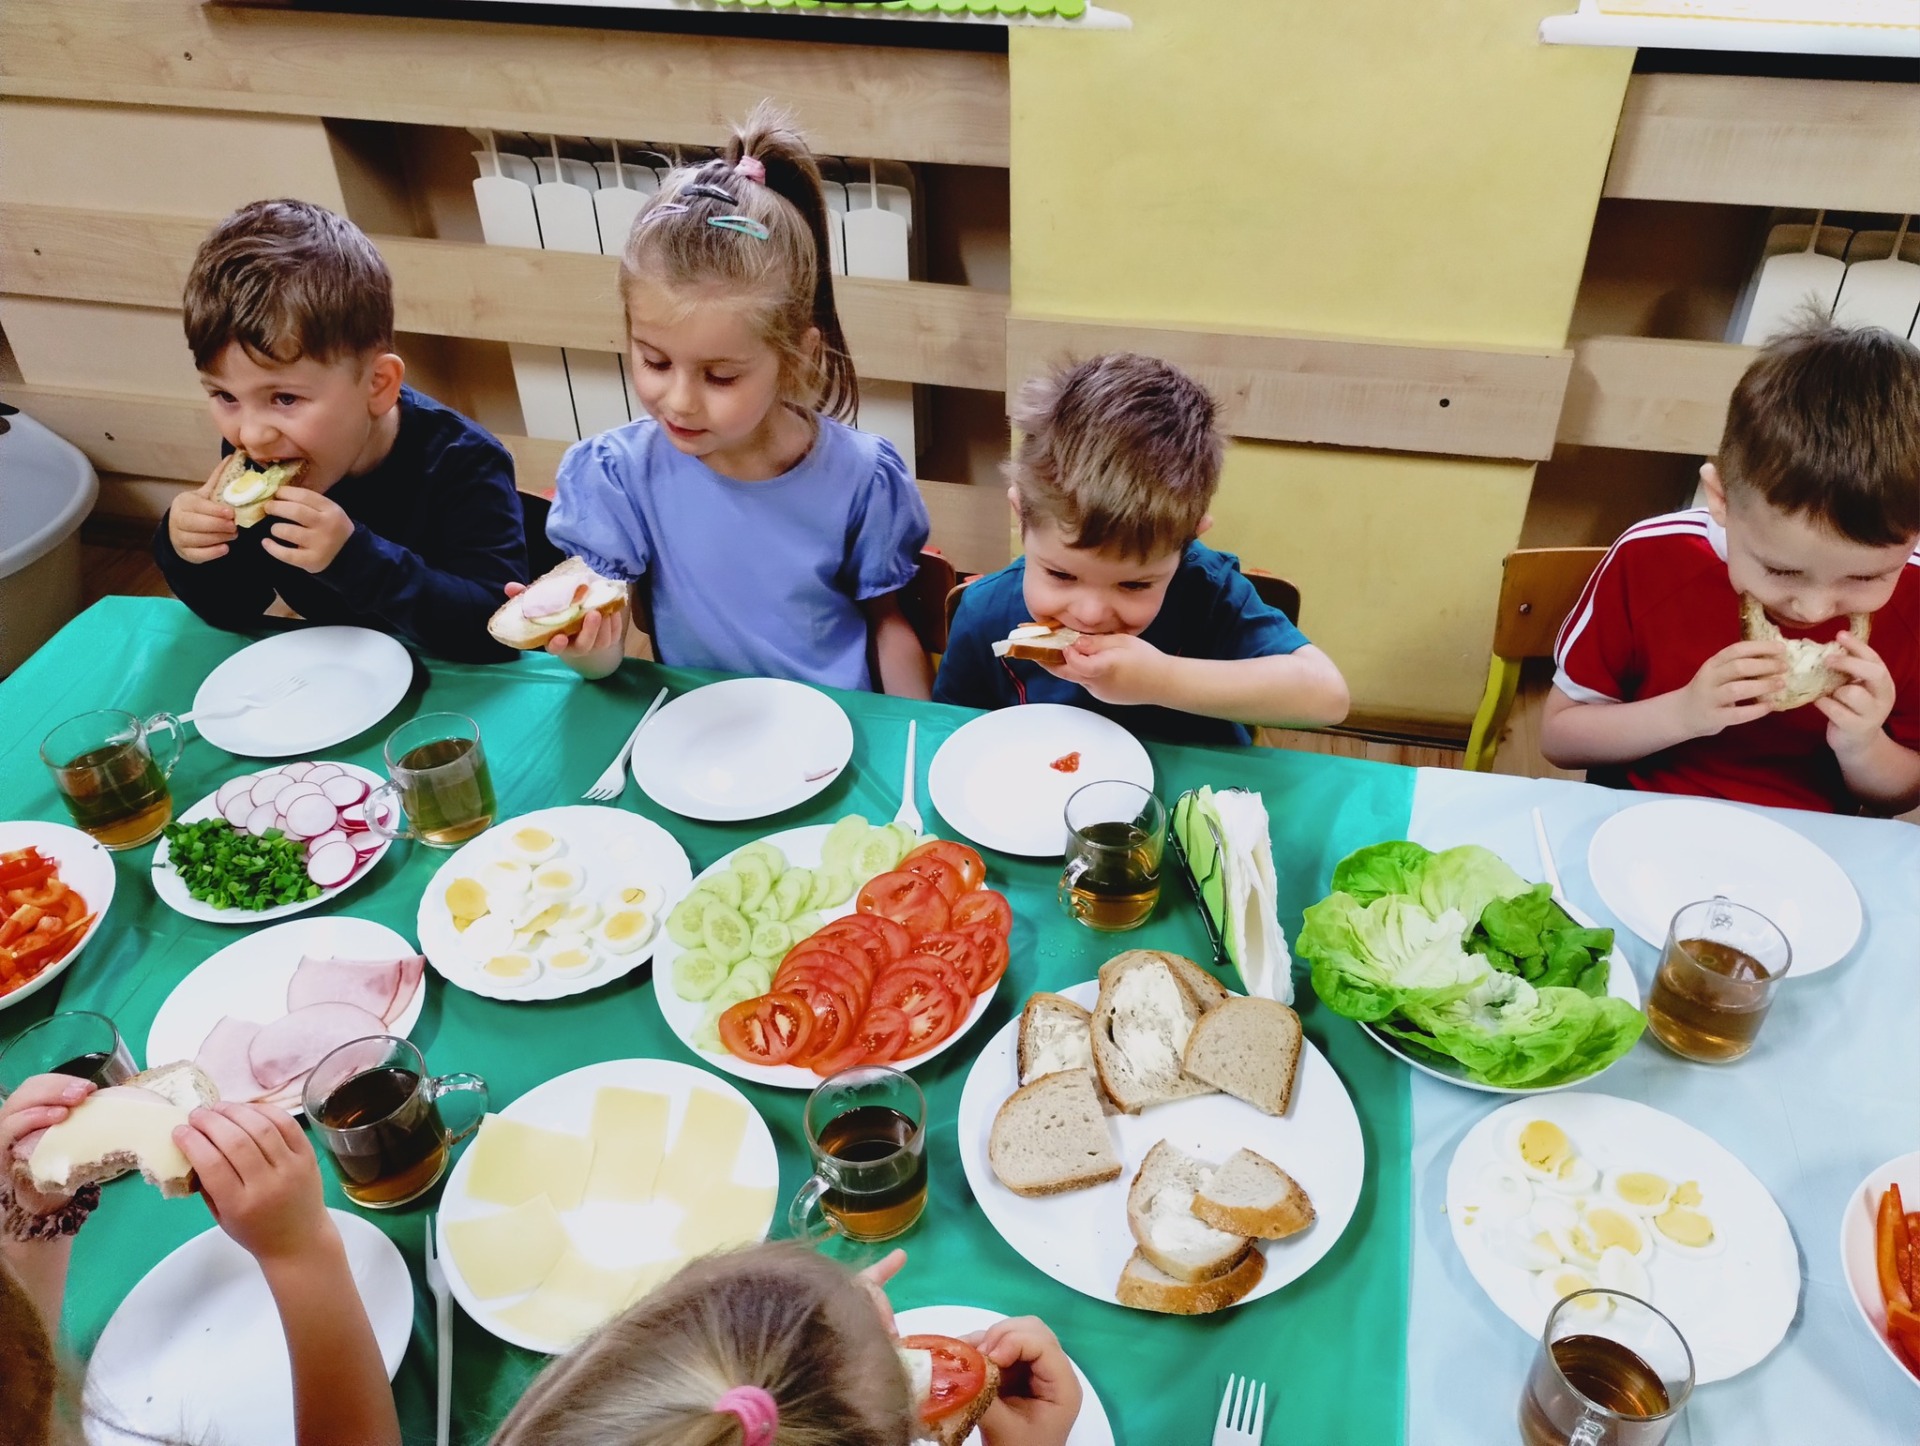 Dzieci przy stole, jedzą przygotowane przez siebie kanapki.